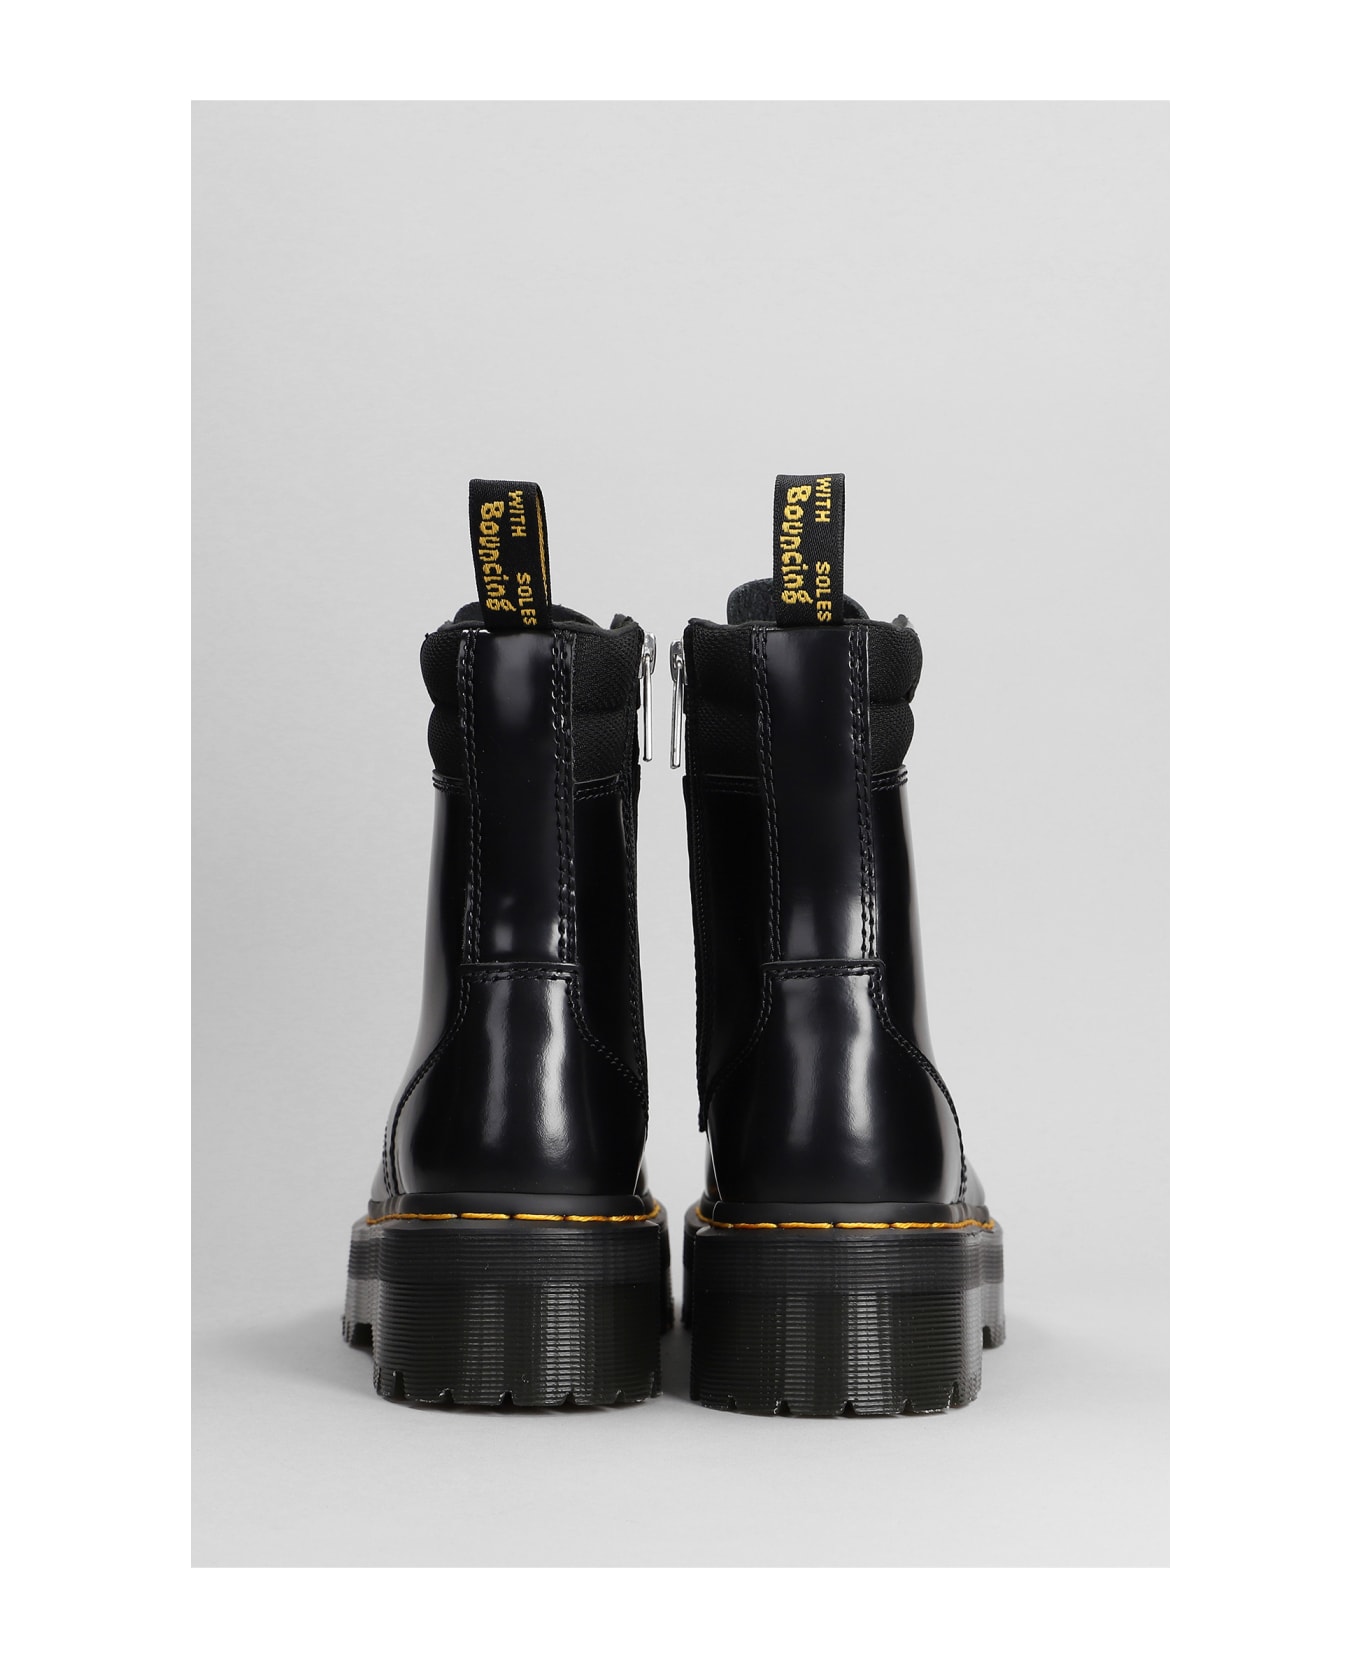 Dr. Martens Jadon Ii Hardware Leather Platform Boots - Black ブーツ